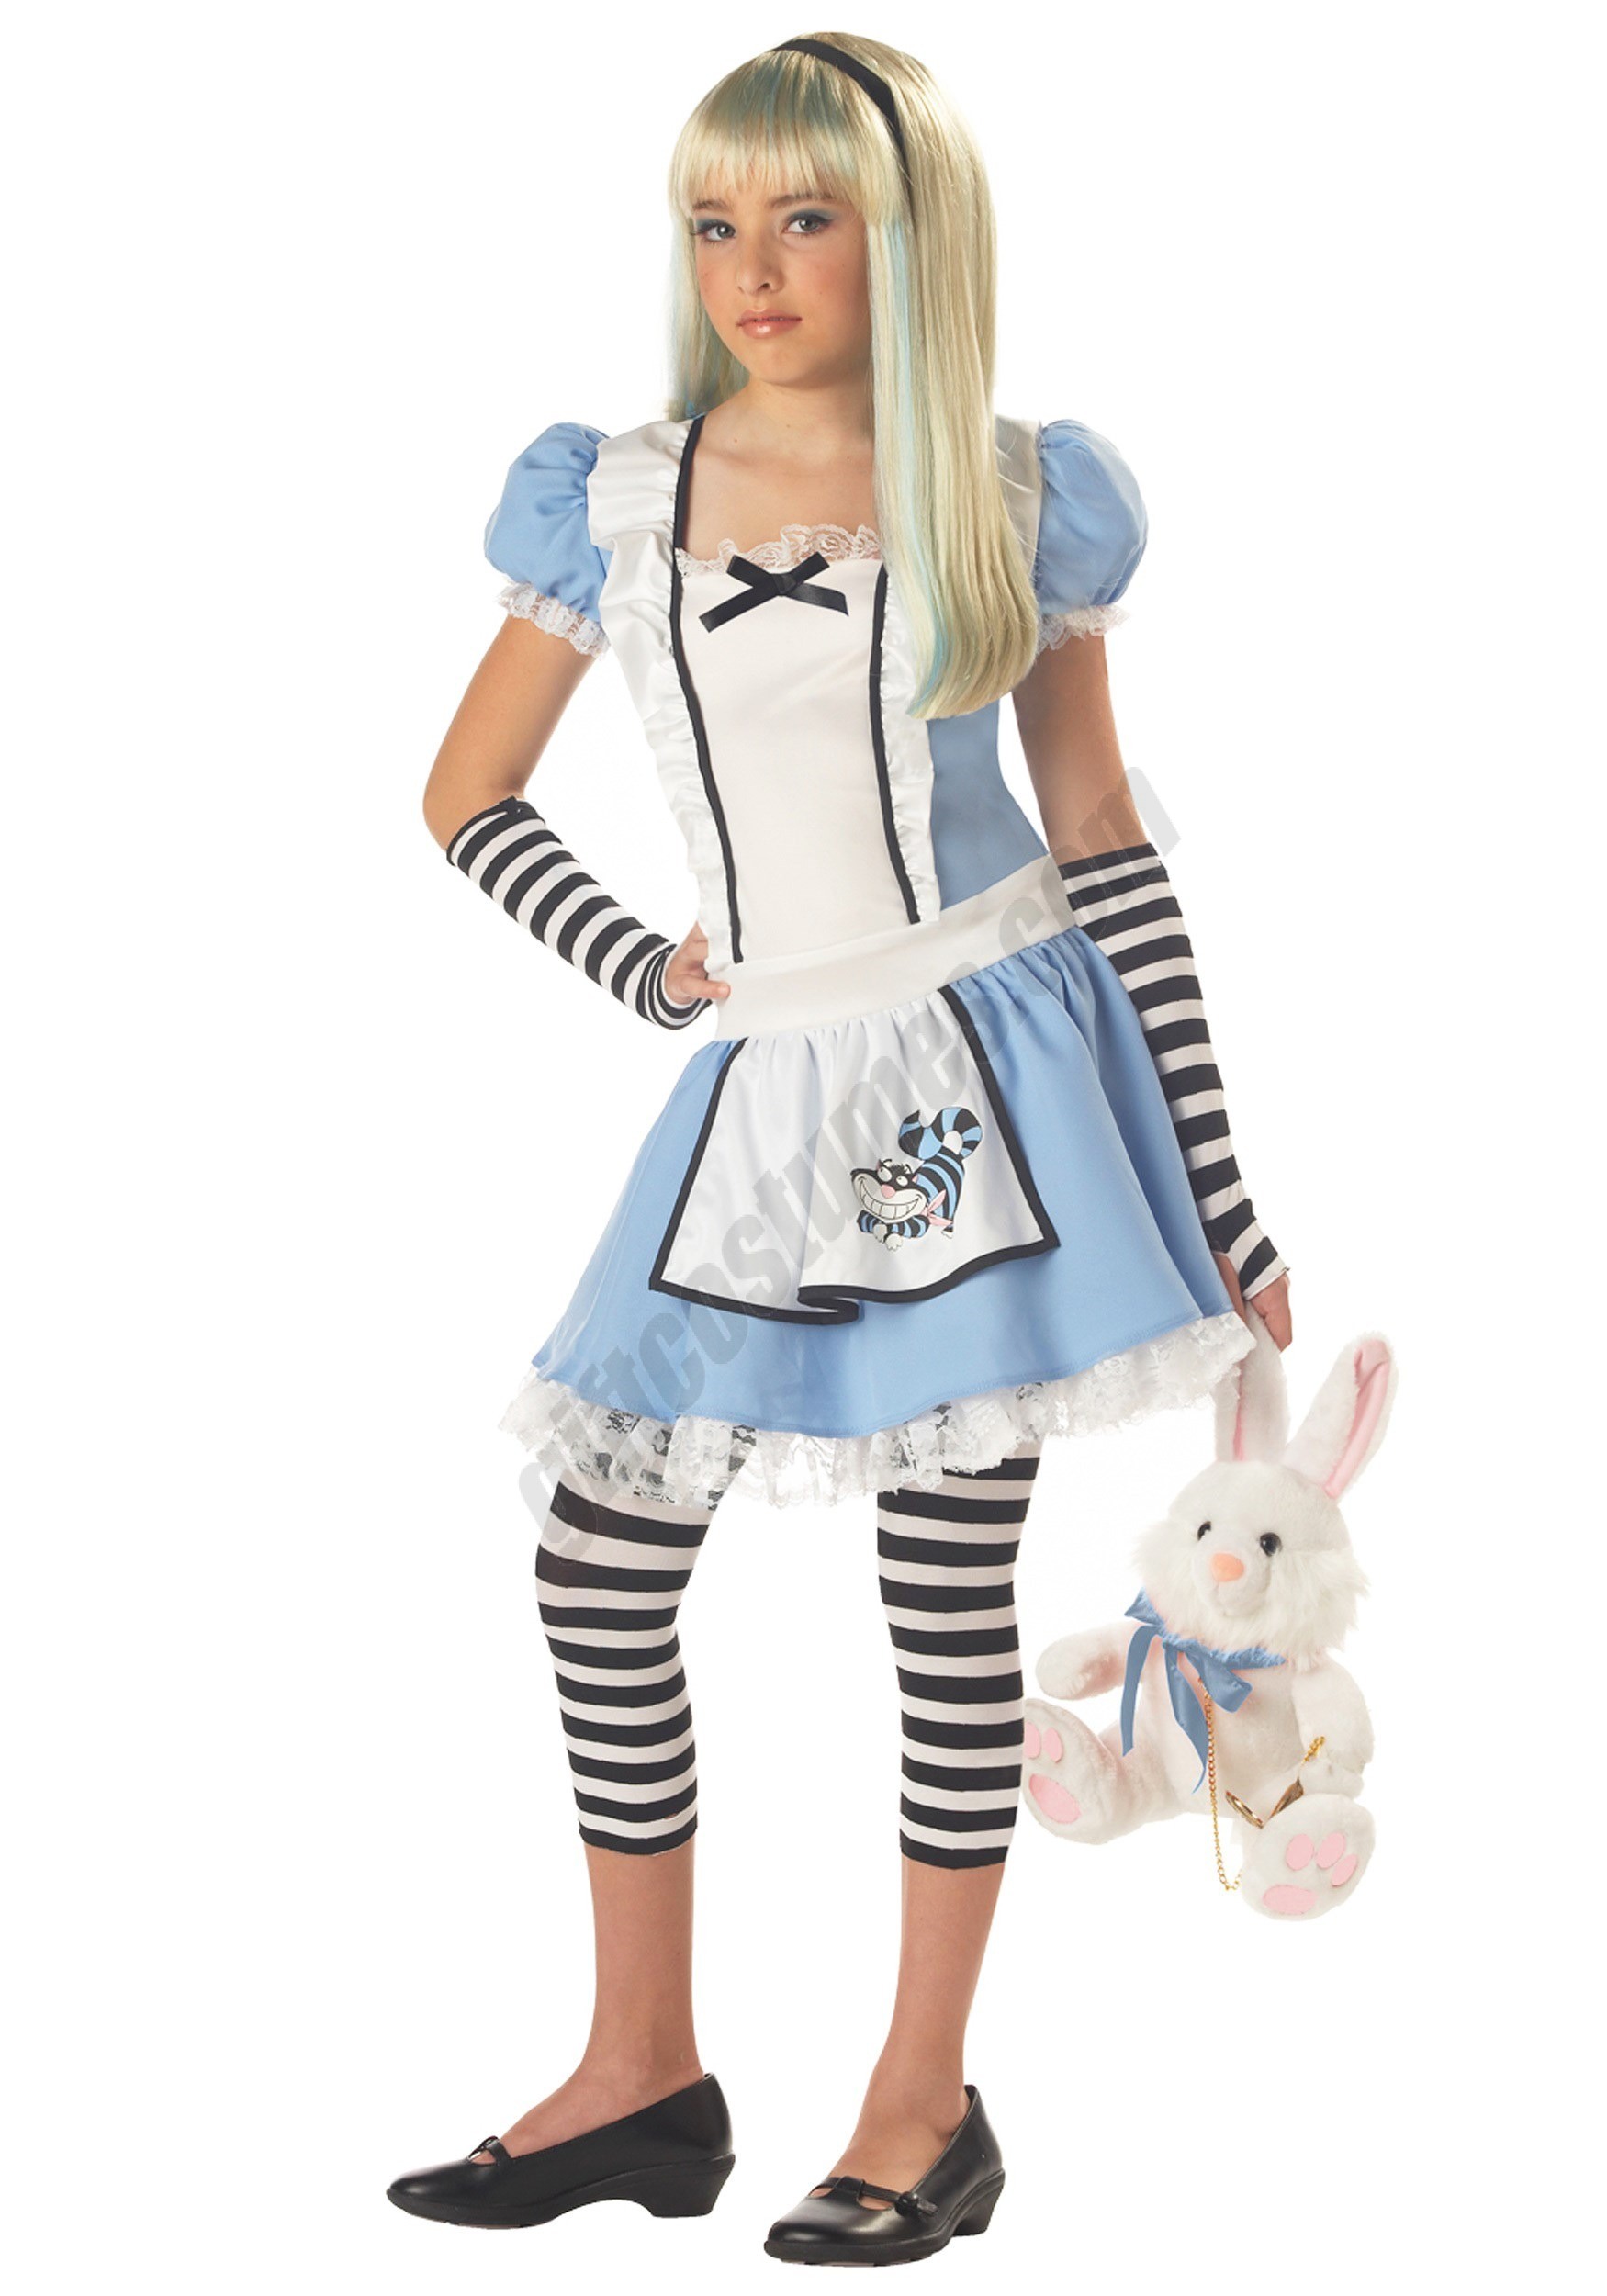 Tween Alice Costume Promotions - Tween Alice Costume Promotions